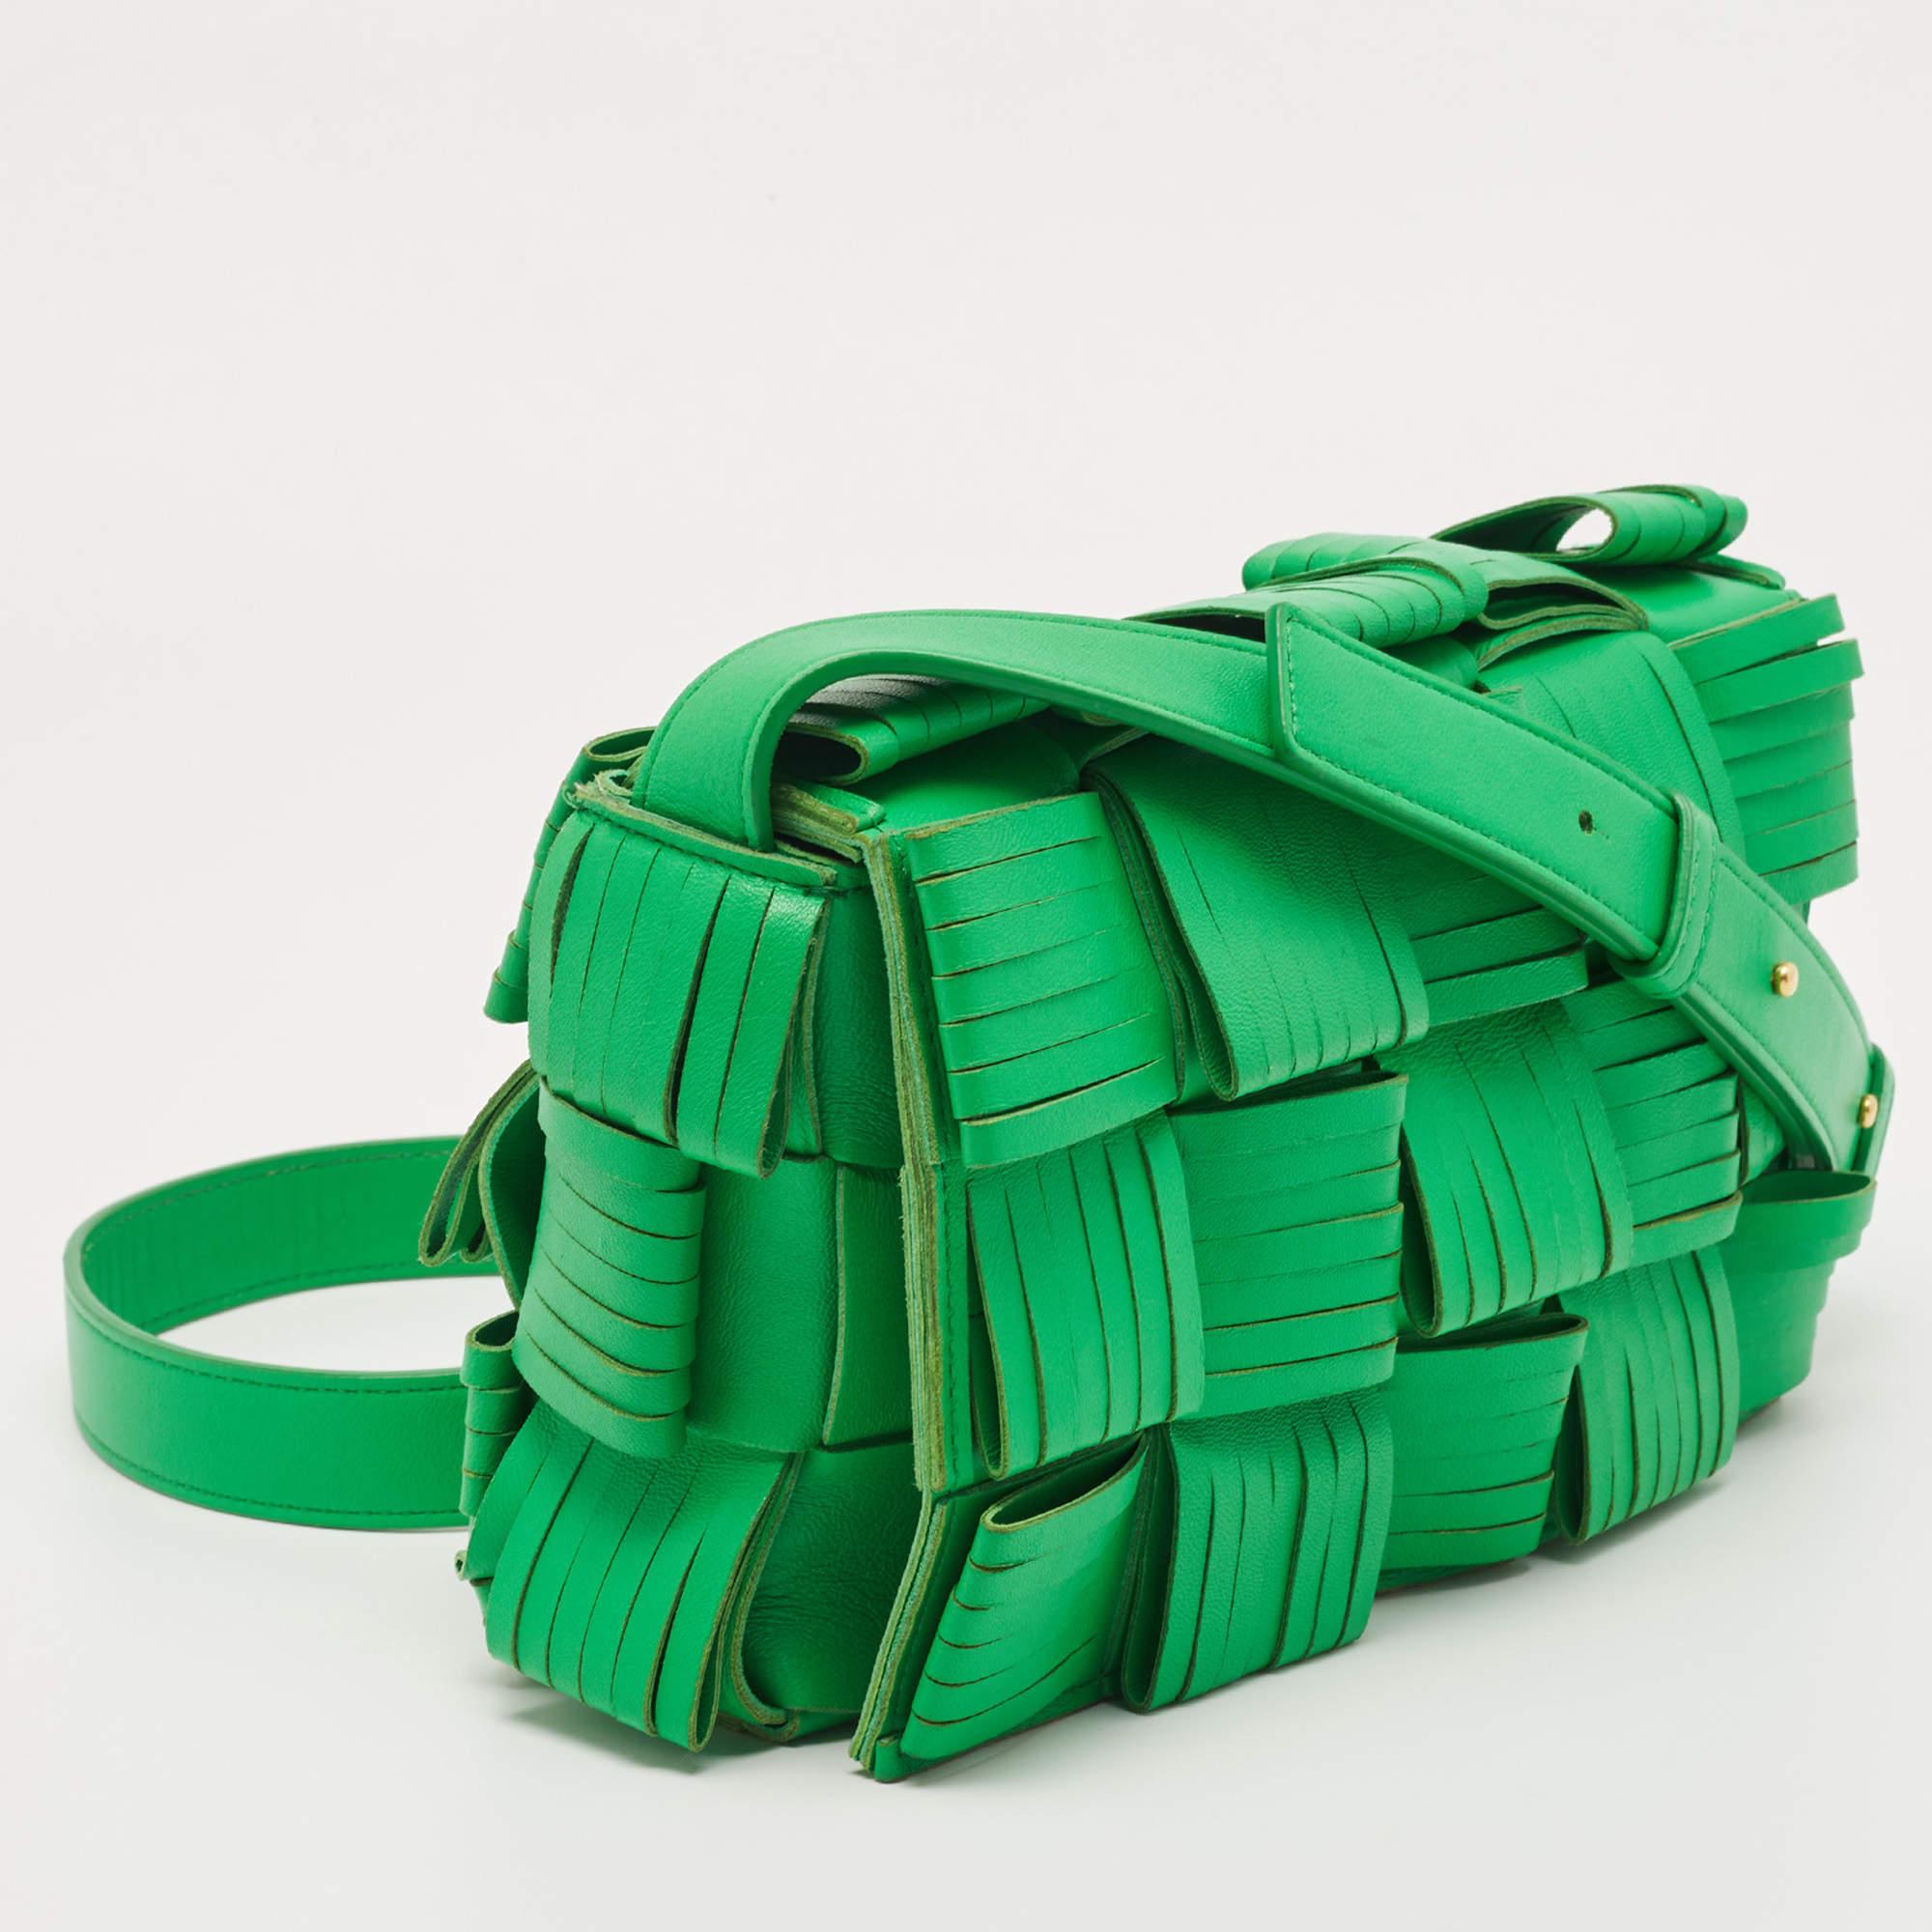 Le sac Cassette de Bottega Veneta est tout ce qu'il y a de plus élégant, tendance et instagrammable. Le sac reprend de façon ludique le code maison de la marque, le tissage Intrecciato, et son extérieur présente une version maxi du tissage.

